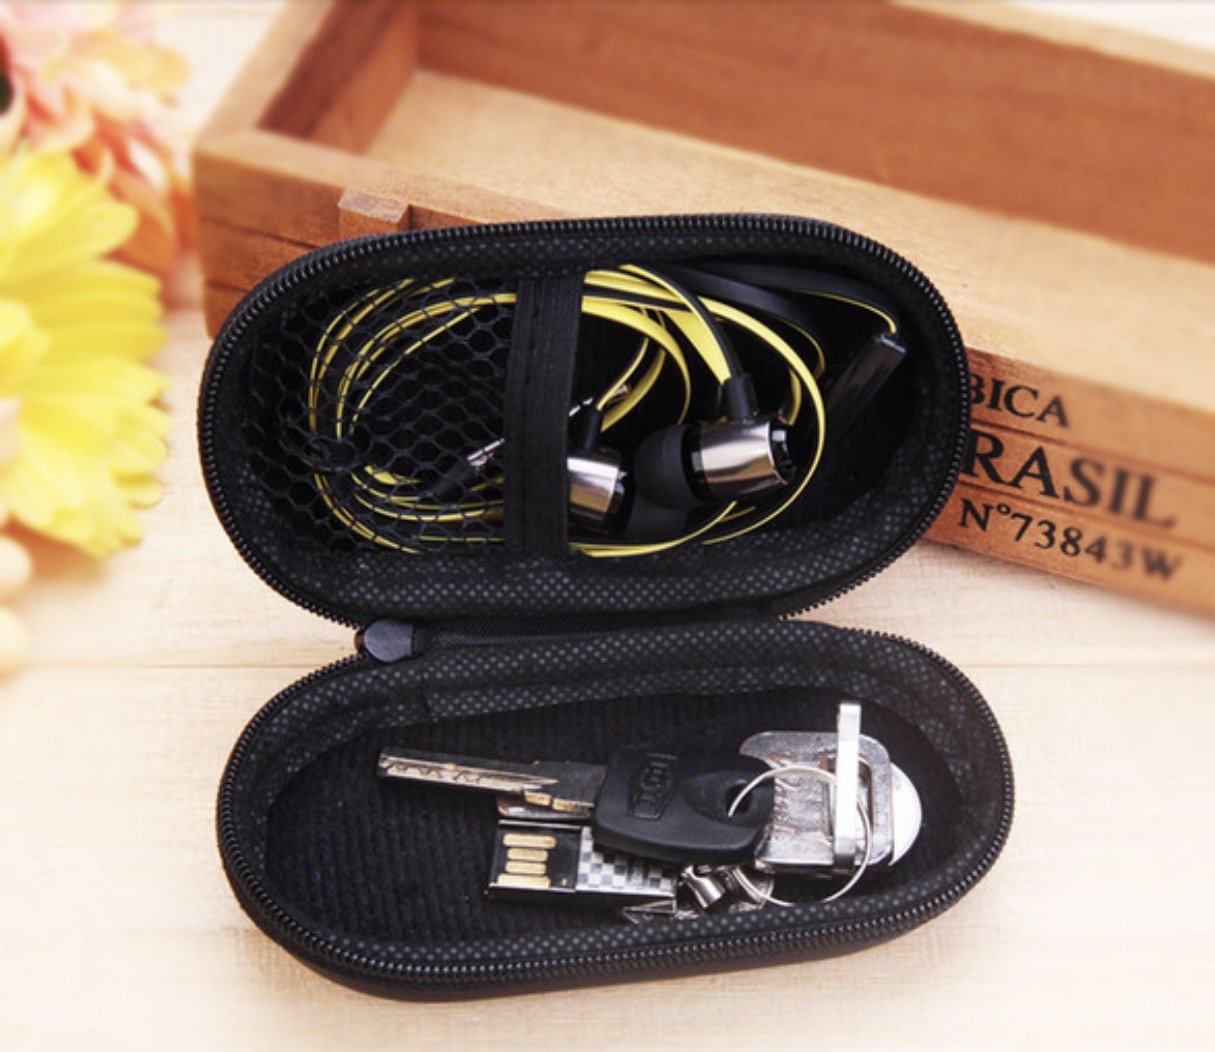 包装盒 蓝牙耳机包 数据线包装 拉链耳机包装盒 热销产品 椭圆包